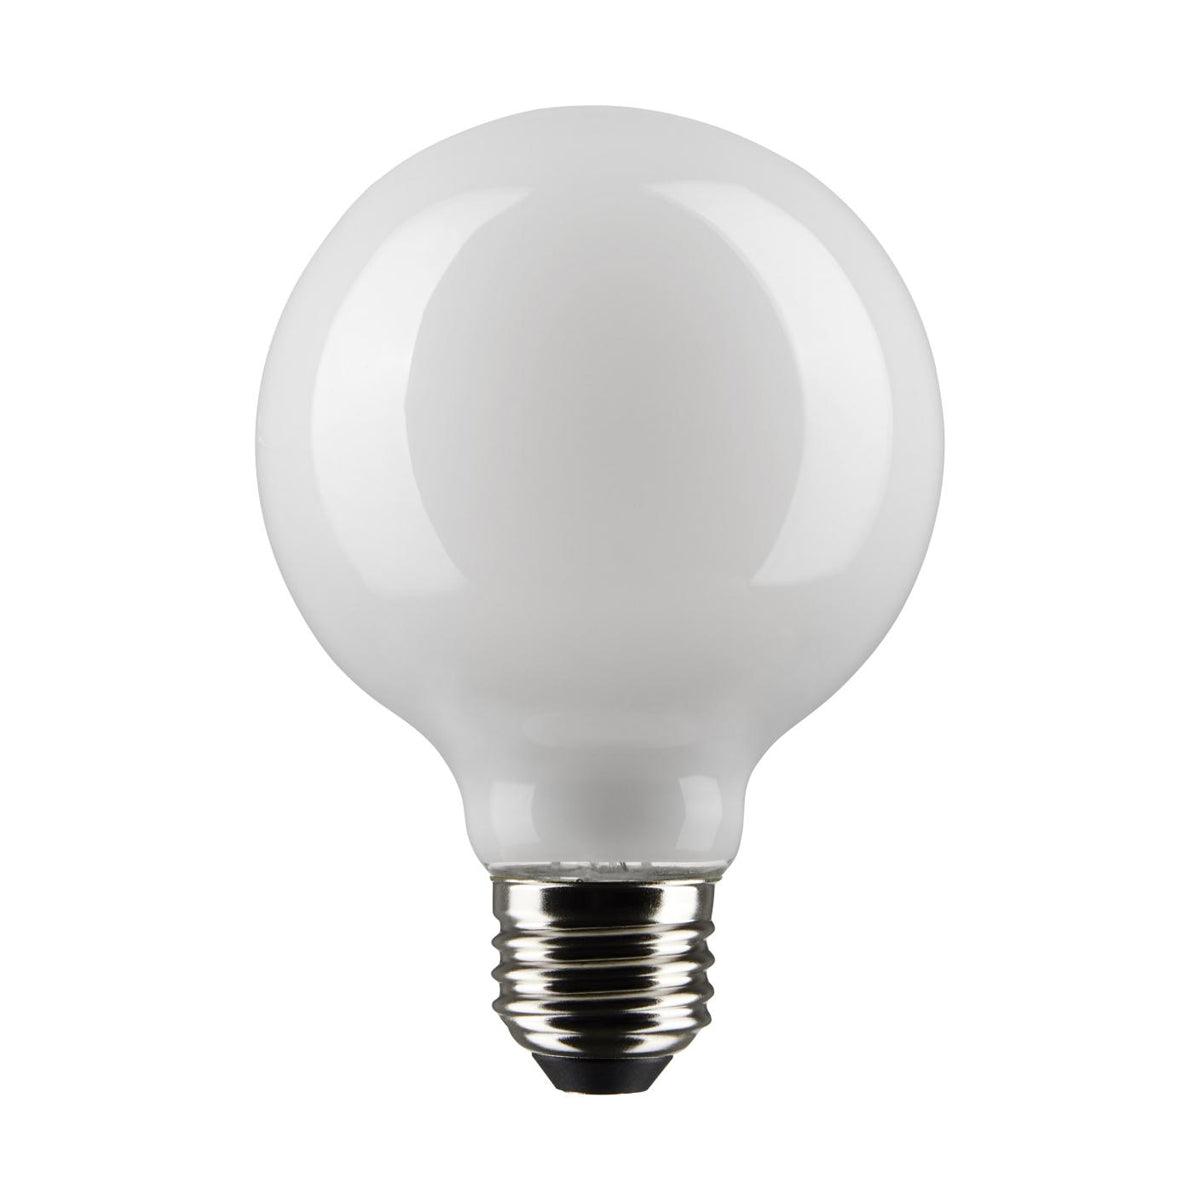 G25 LED Globe Bulb, 6 Watt, 500 Lumens, 5000K, E26 Medium Base, Frosted Finish - Bees Lighting